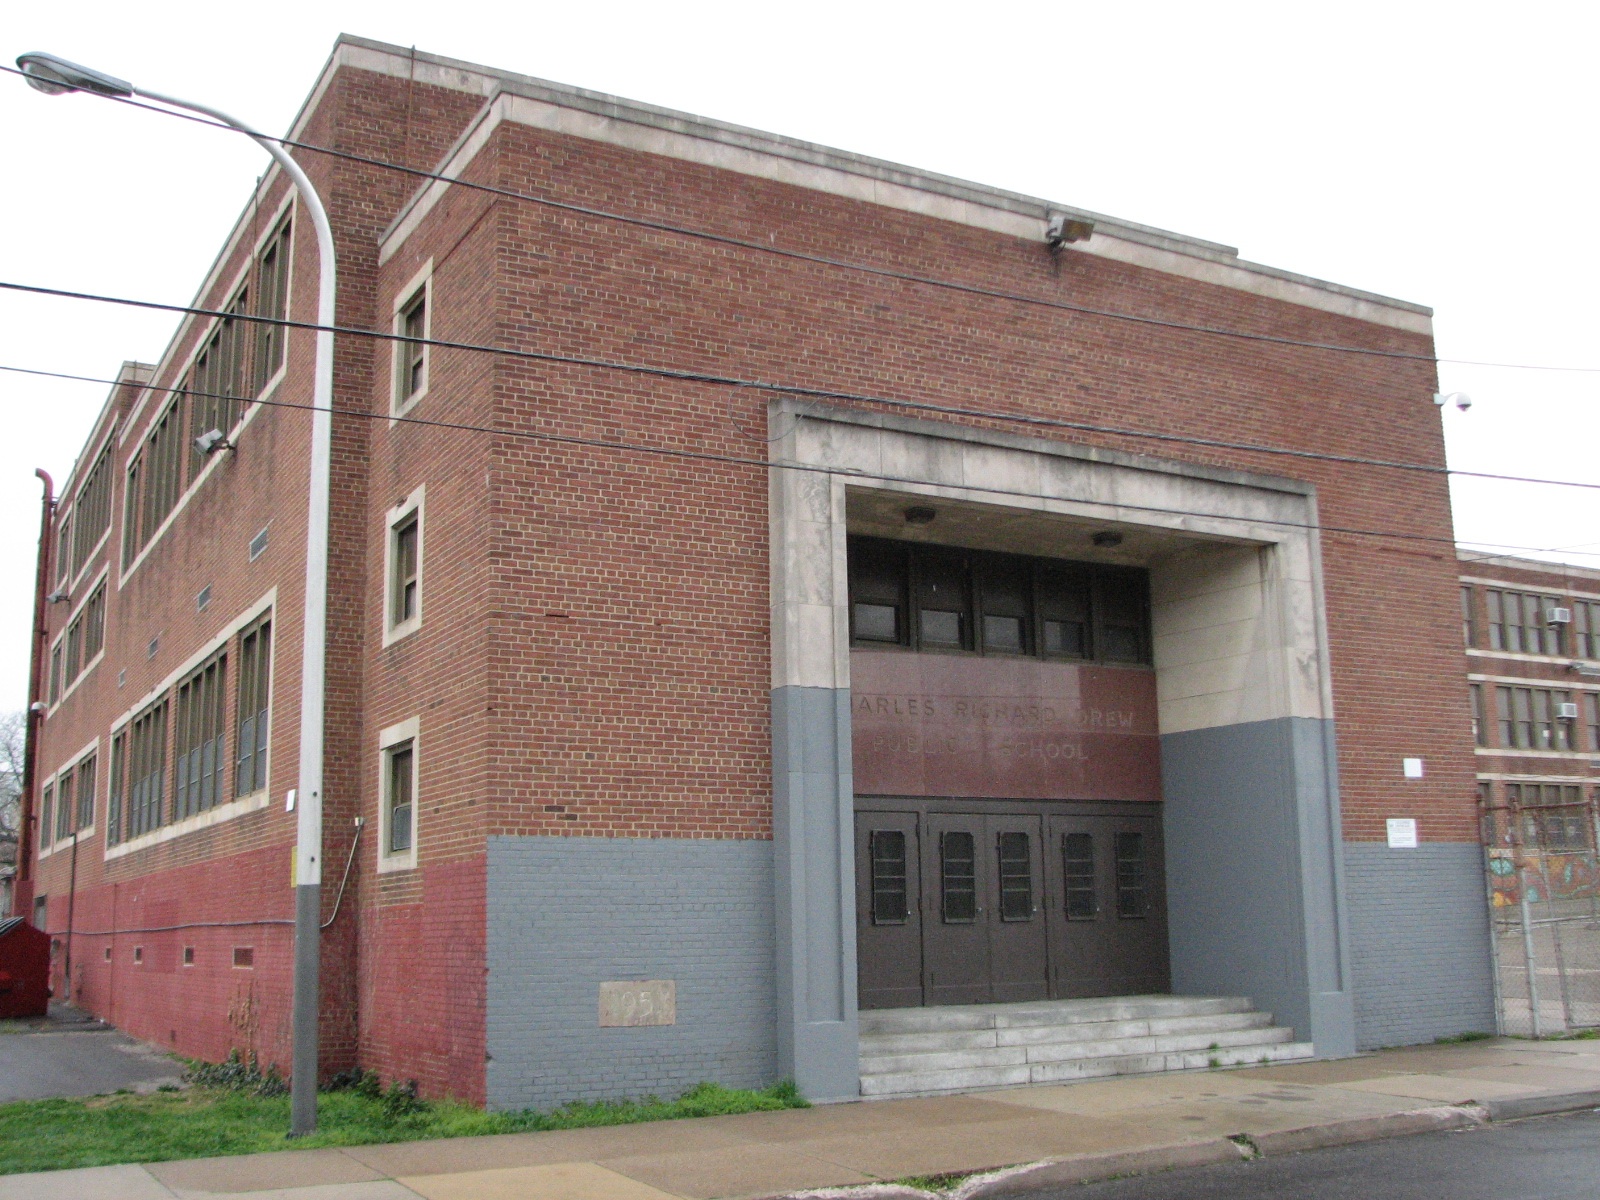 The entrance to Drew Elementary School, 3724 Warren Street.